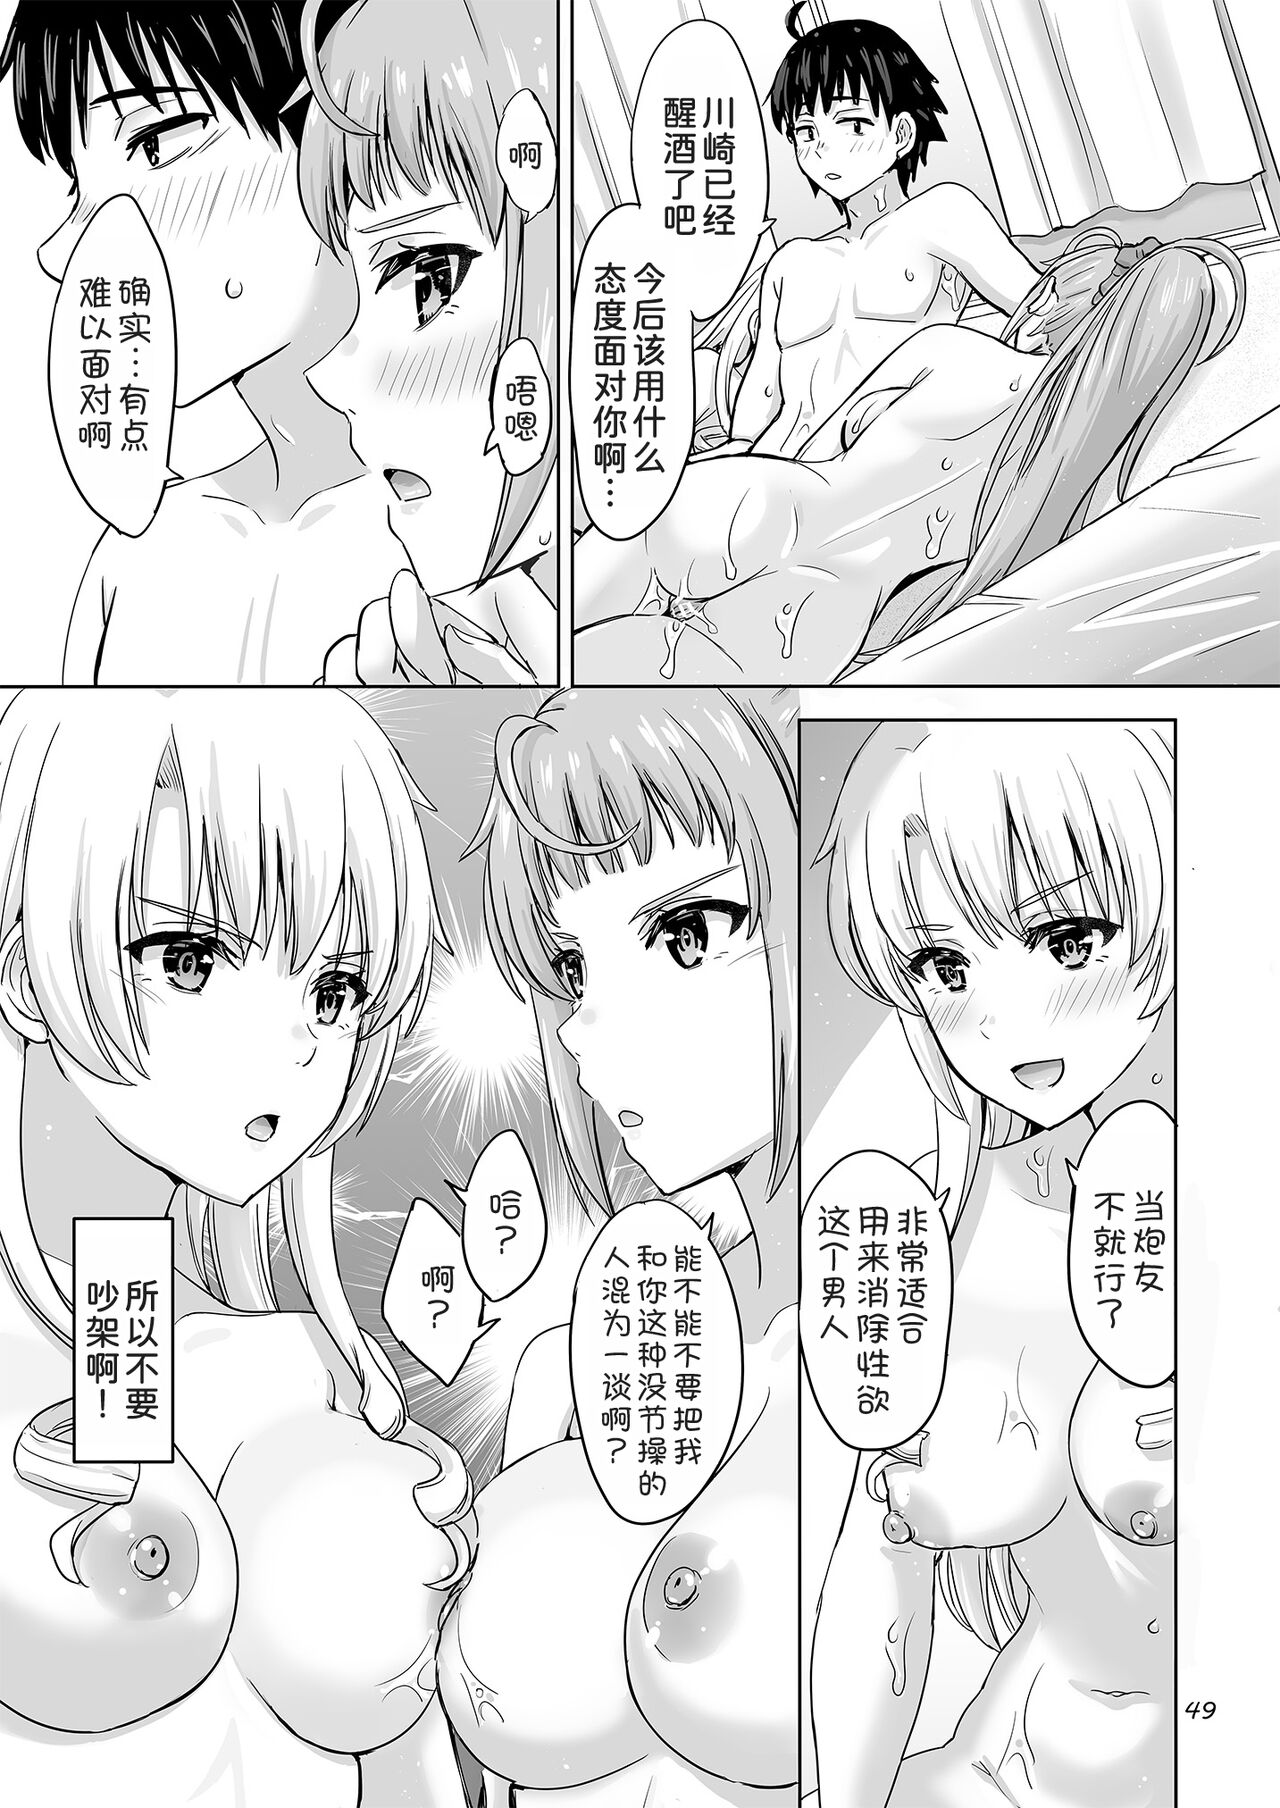 Dokyusei-tachi to no Sukoshi Ibitsu na Nikutai Kankei. - Yumiko miura & Saki kawasaki each have sex with Hachiman. - Foto 49